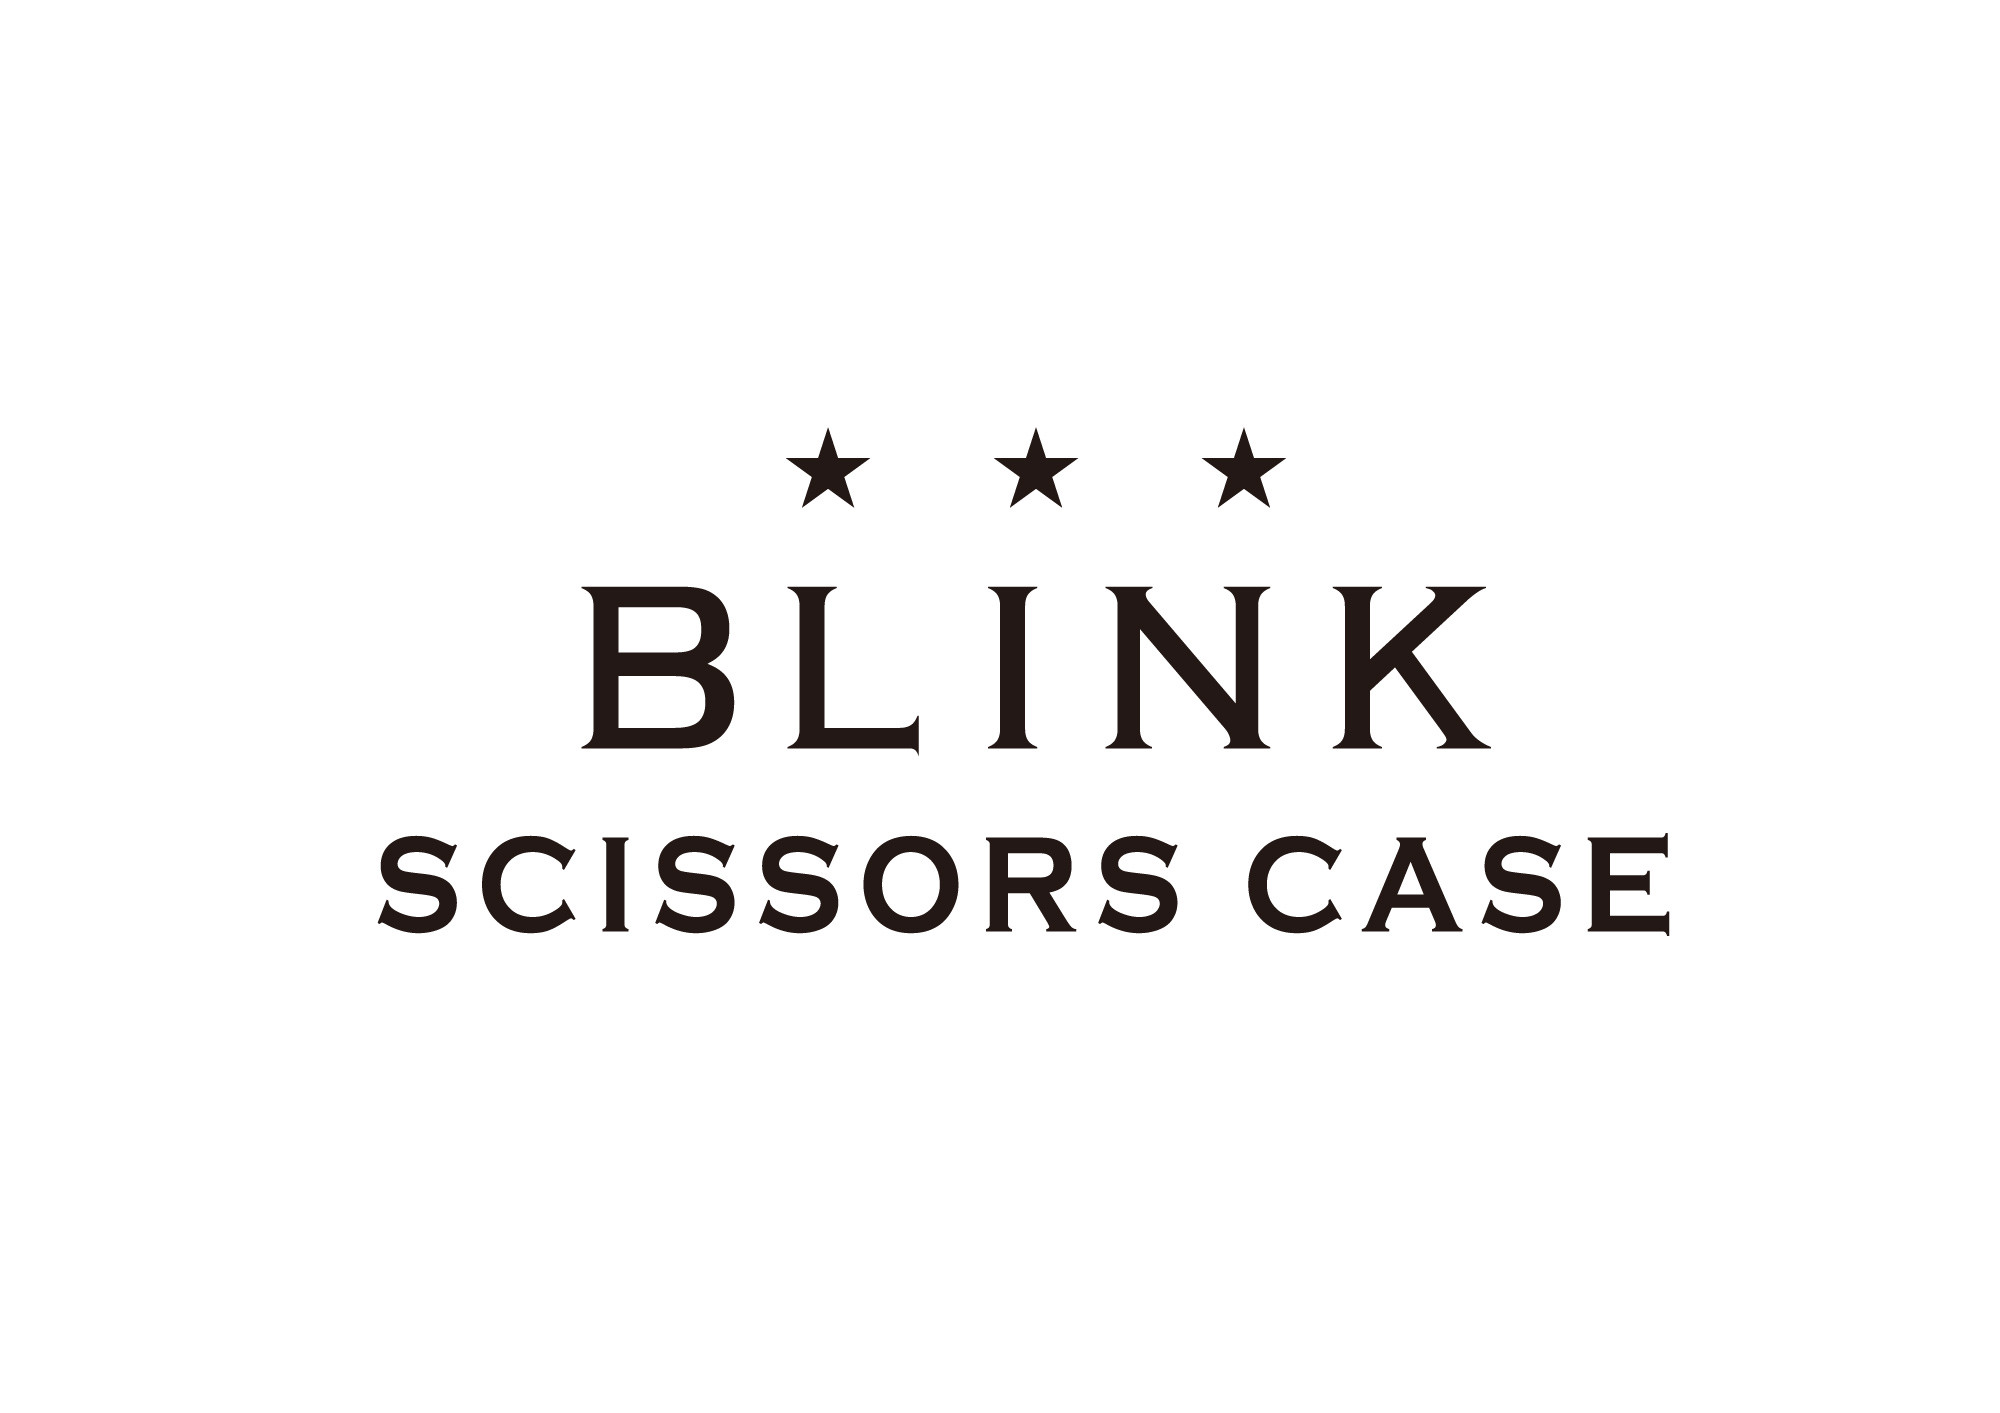 BLINK SCISSORS CASE